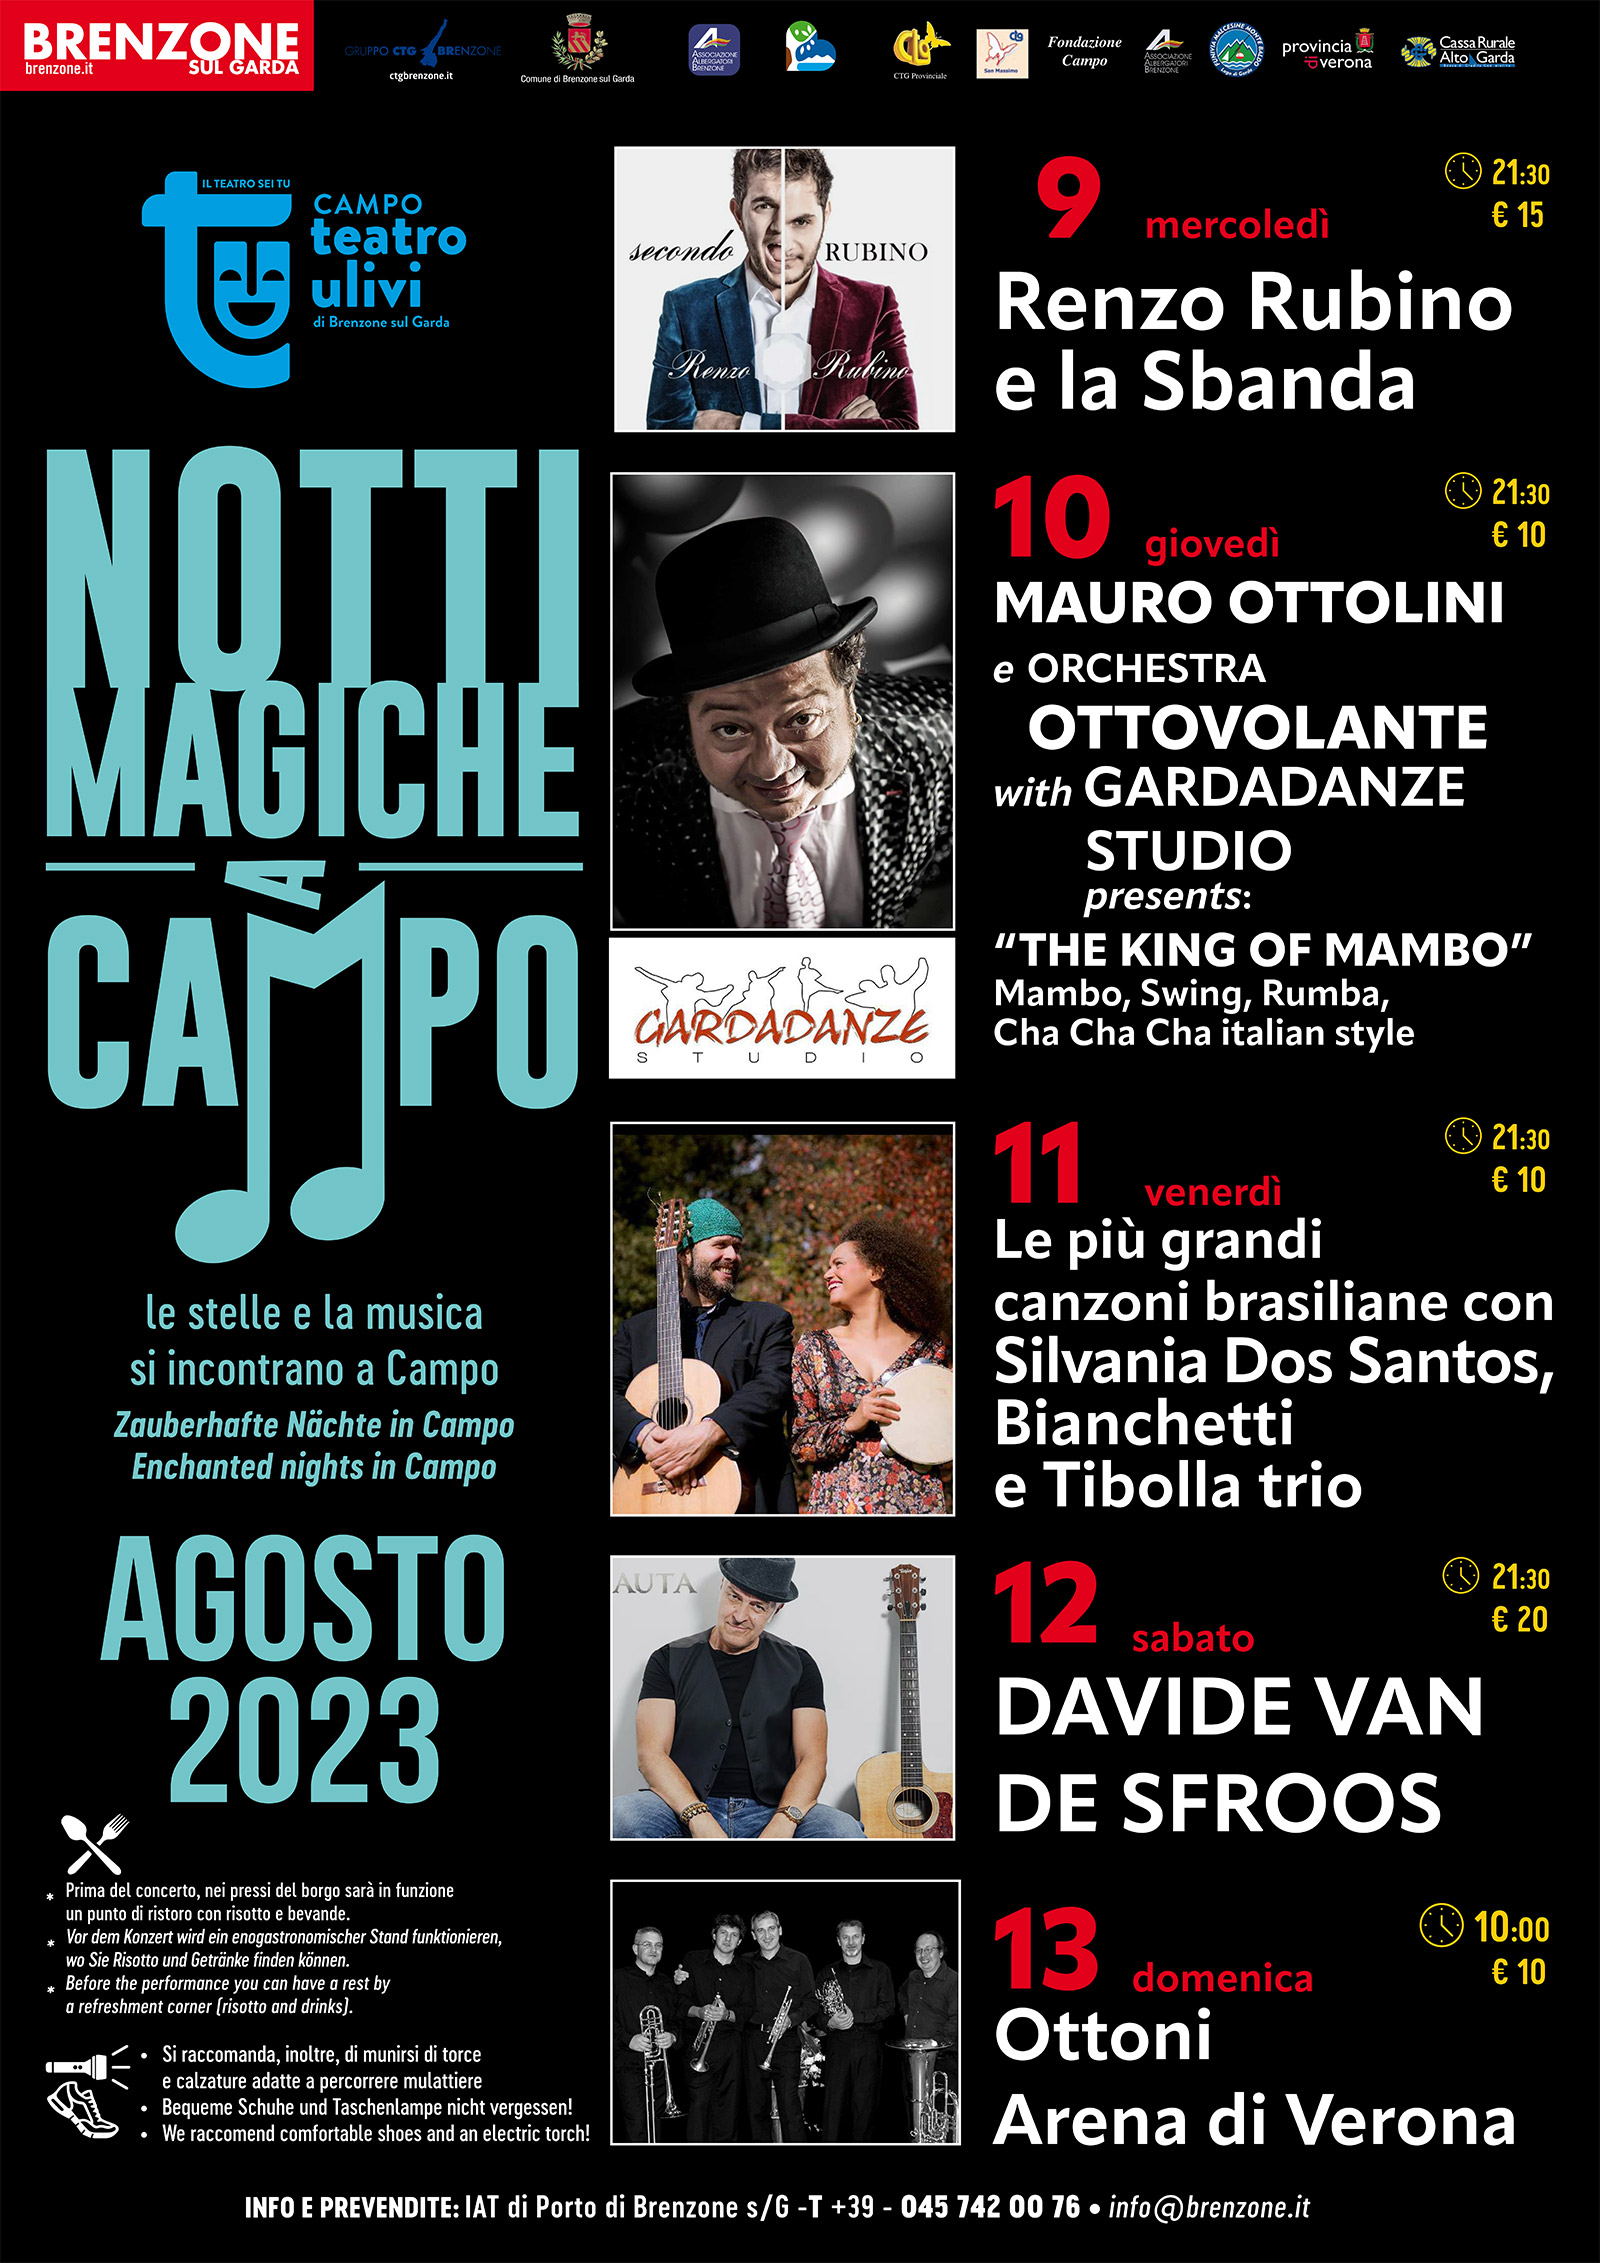 Notti Magiche a Campo in agosto - Magische Nächte in Campo in August - Magical nights in Campo in August